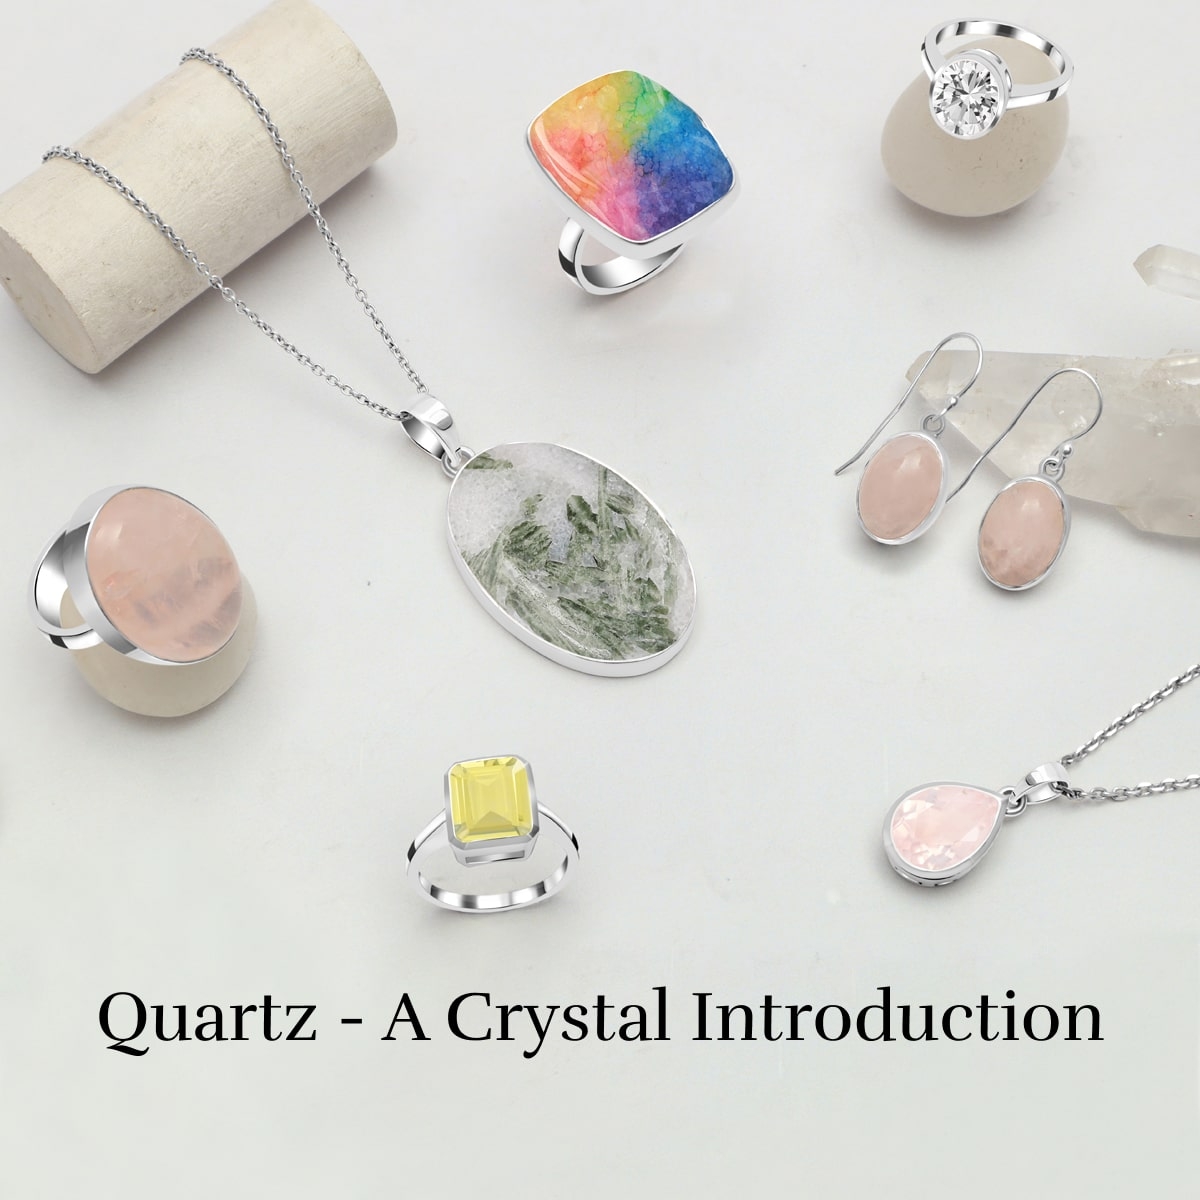 What is Quartz